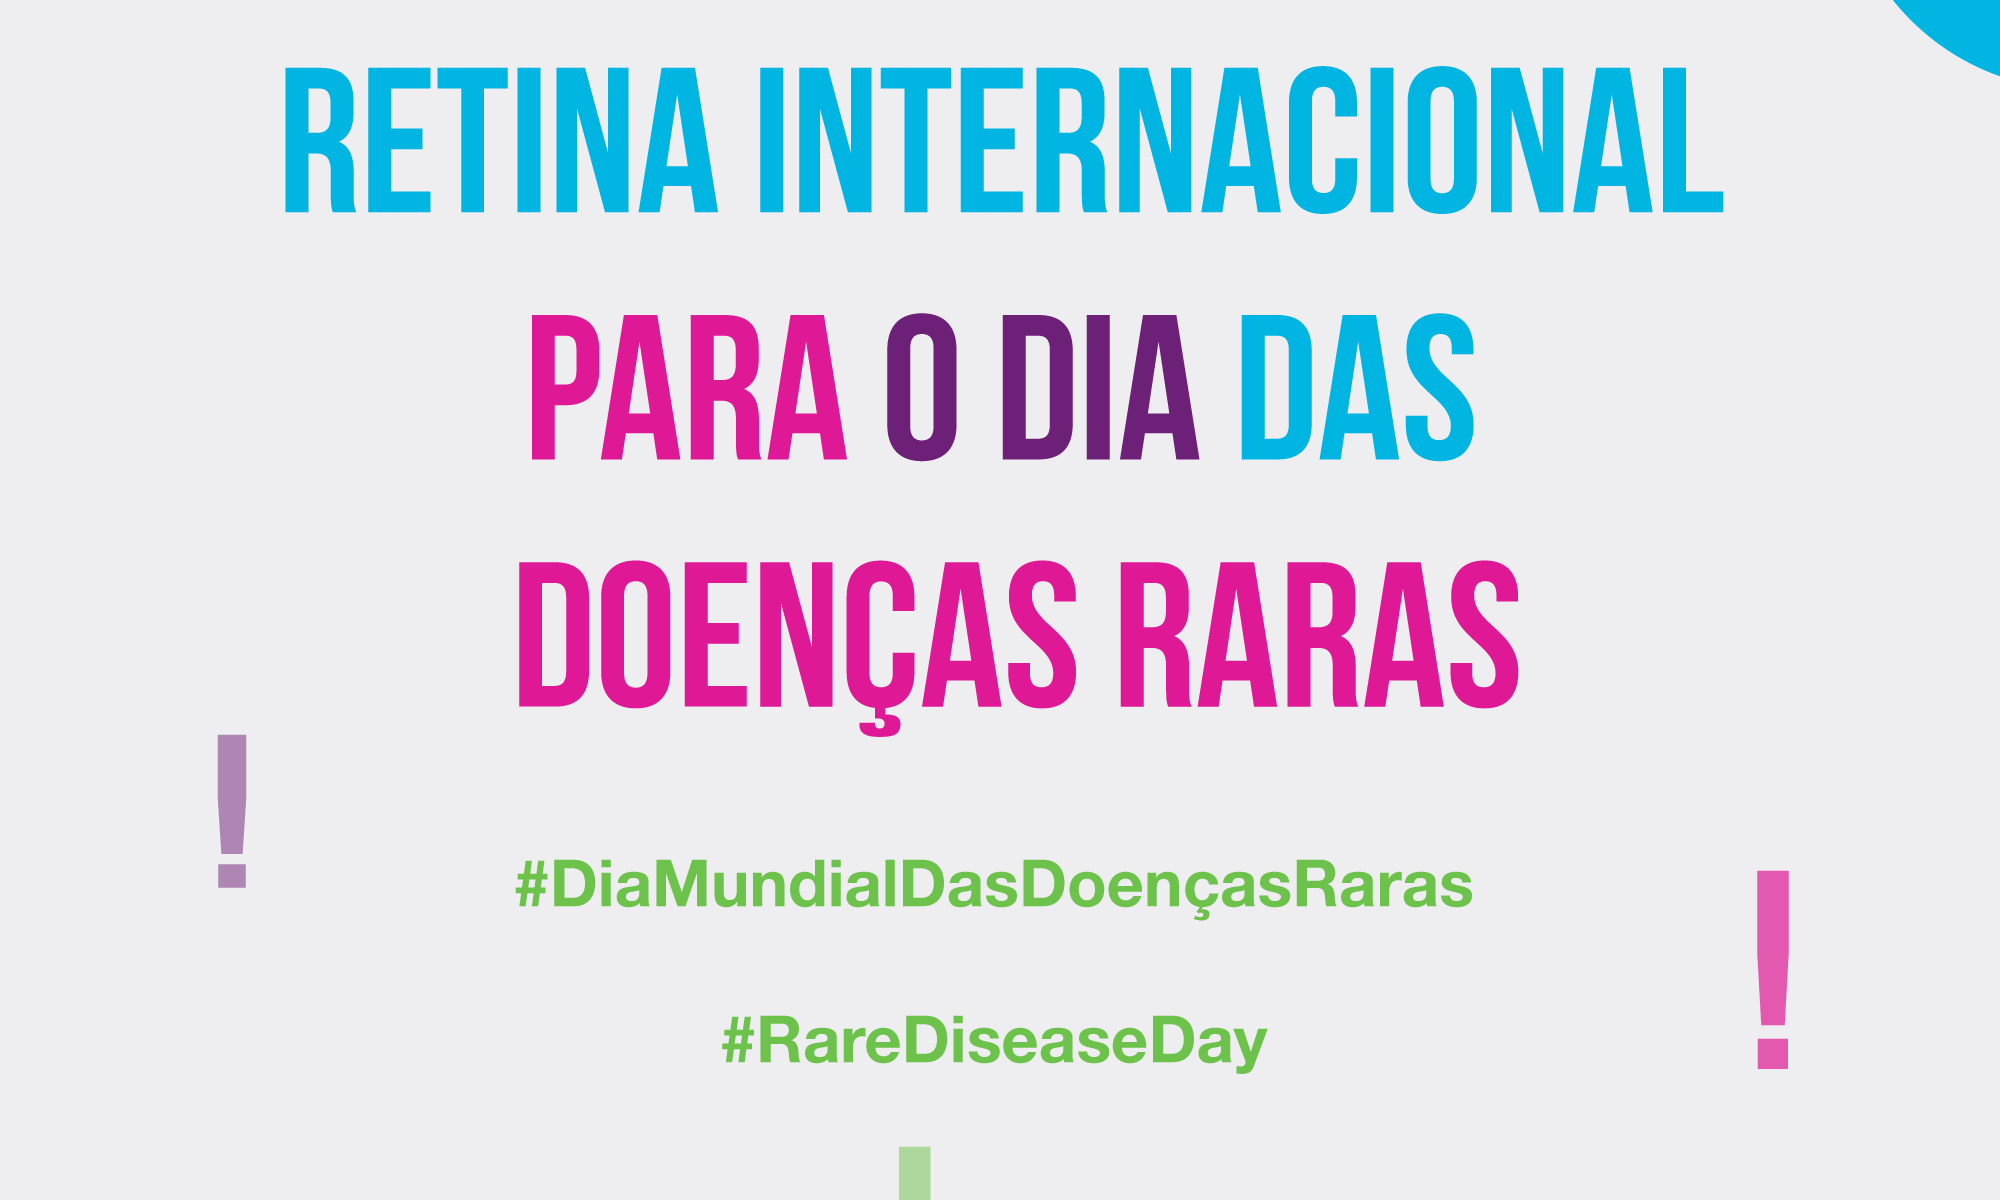 #PraCegoVer imagem ilustrativa. Está escrito "Mensagem da Retina Internacional para o Dia Das Doenças Raras" #RareDiseaseDay #DiaMundialDAsDoecasRaras